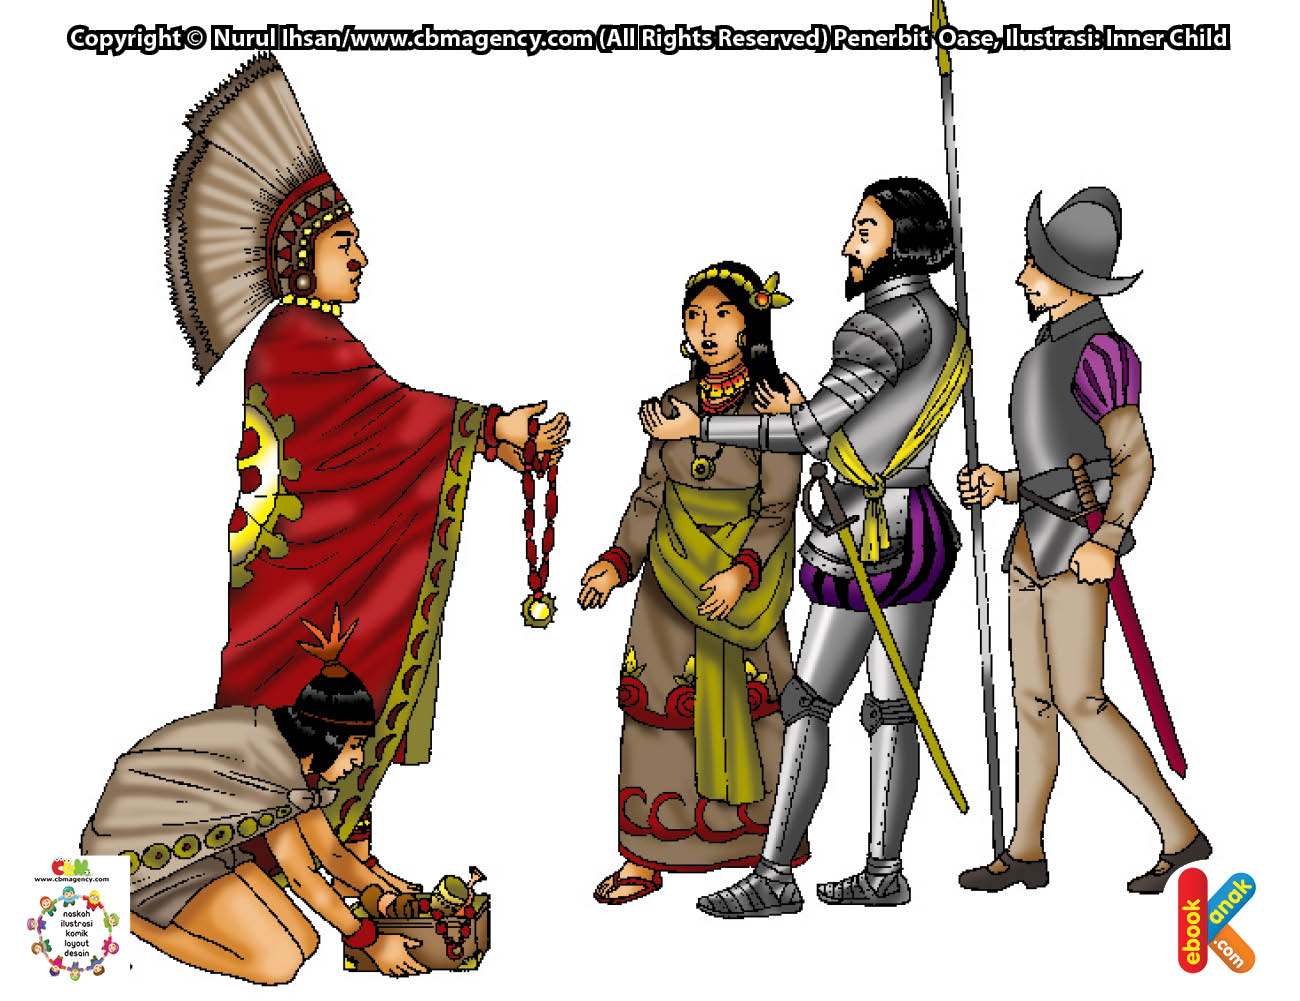 Hernan Cortes berlayar ke Dunia Baru di bawah dukungan Spanyol untuk menemukan dan menaklukkan wilayah itu.